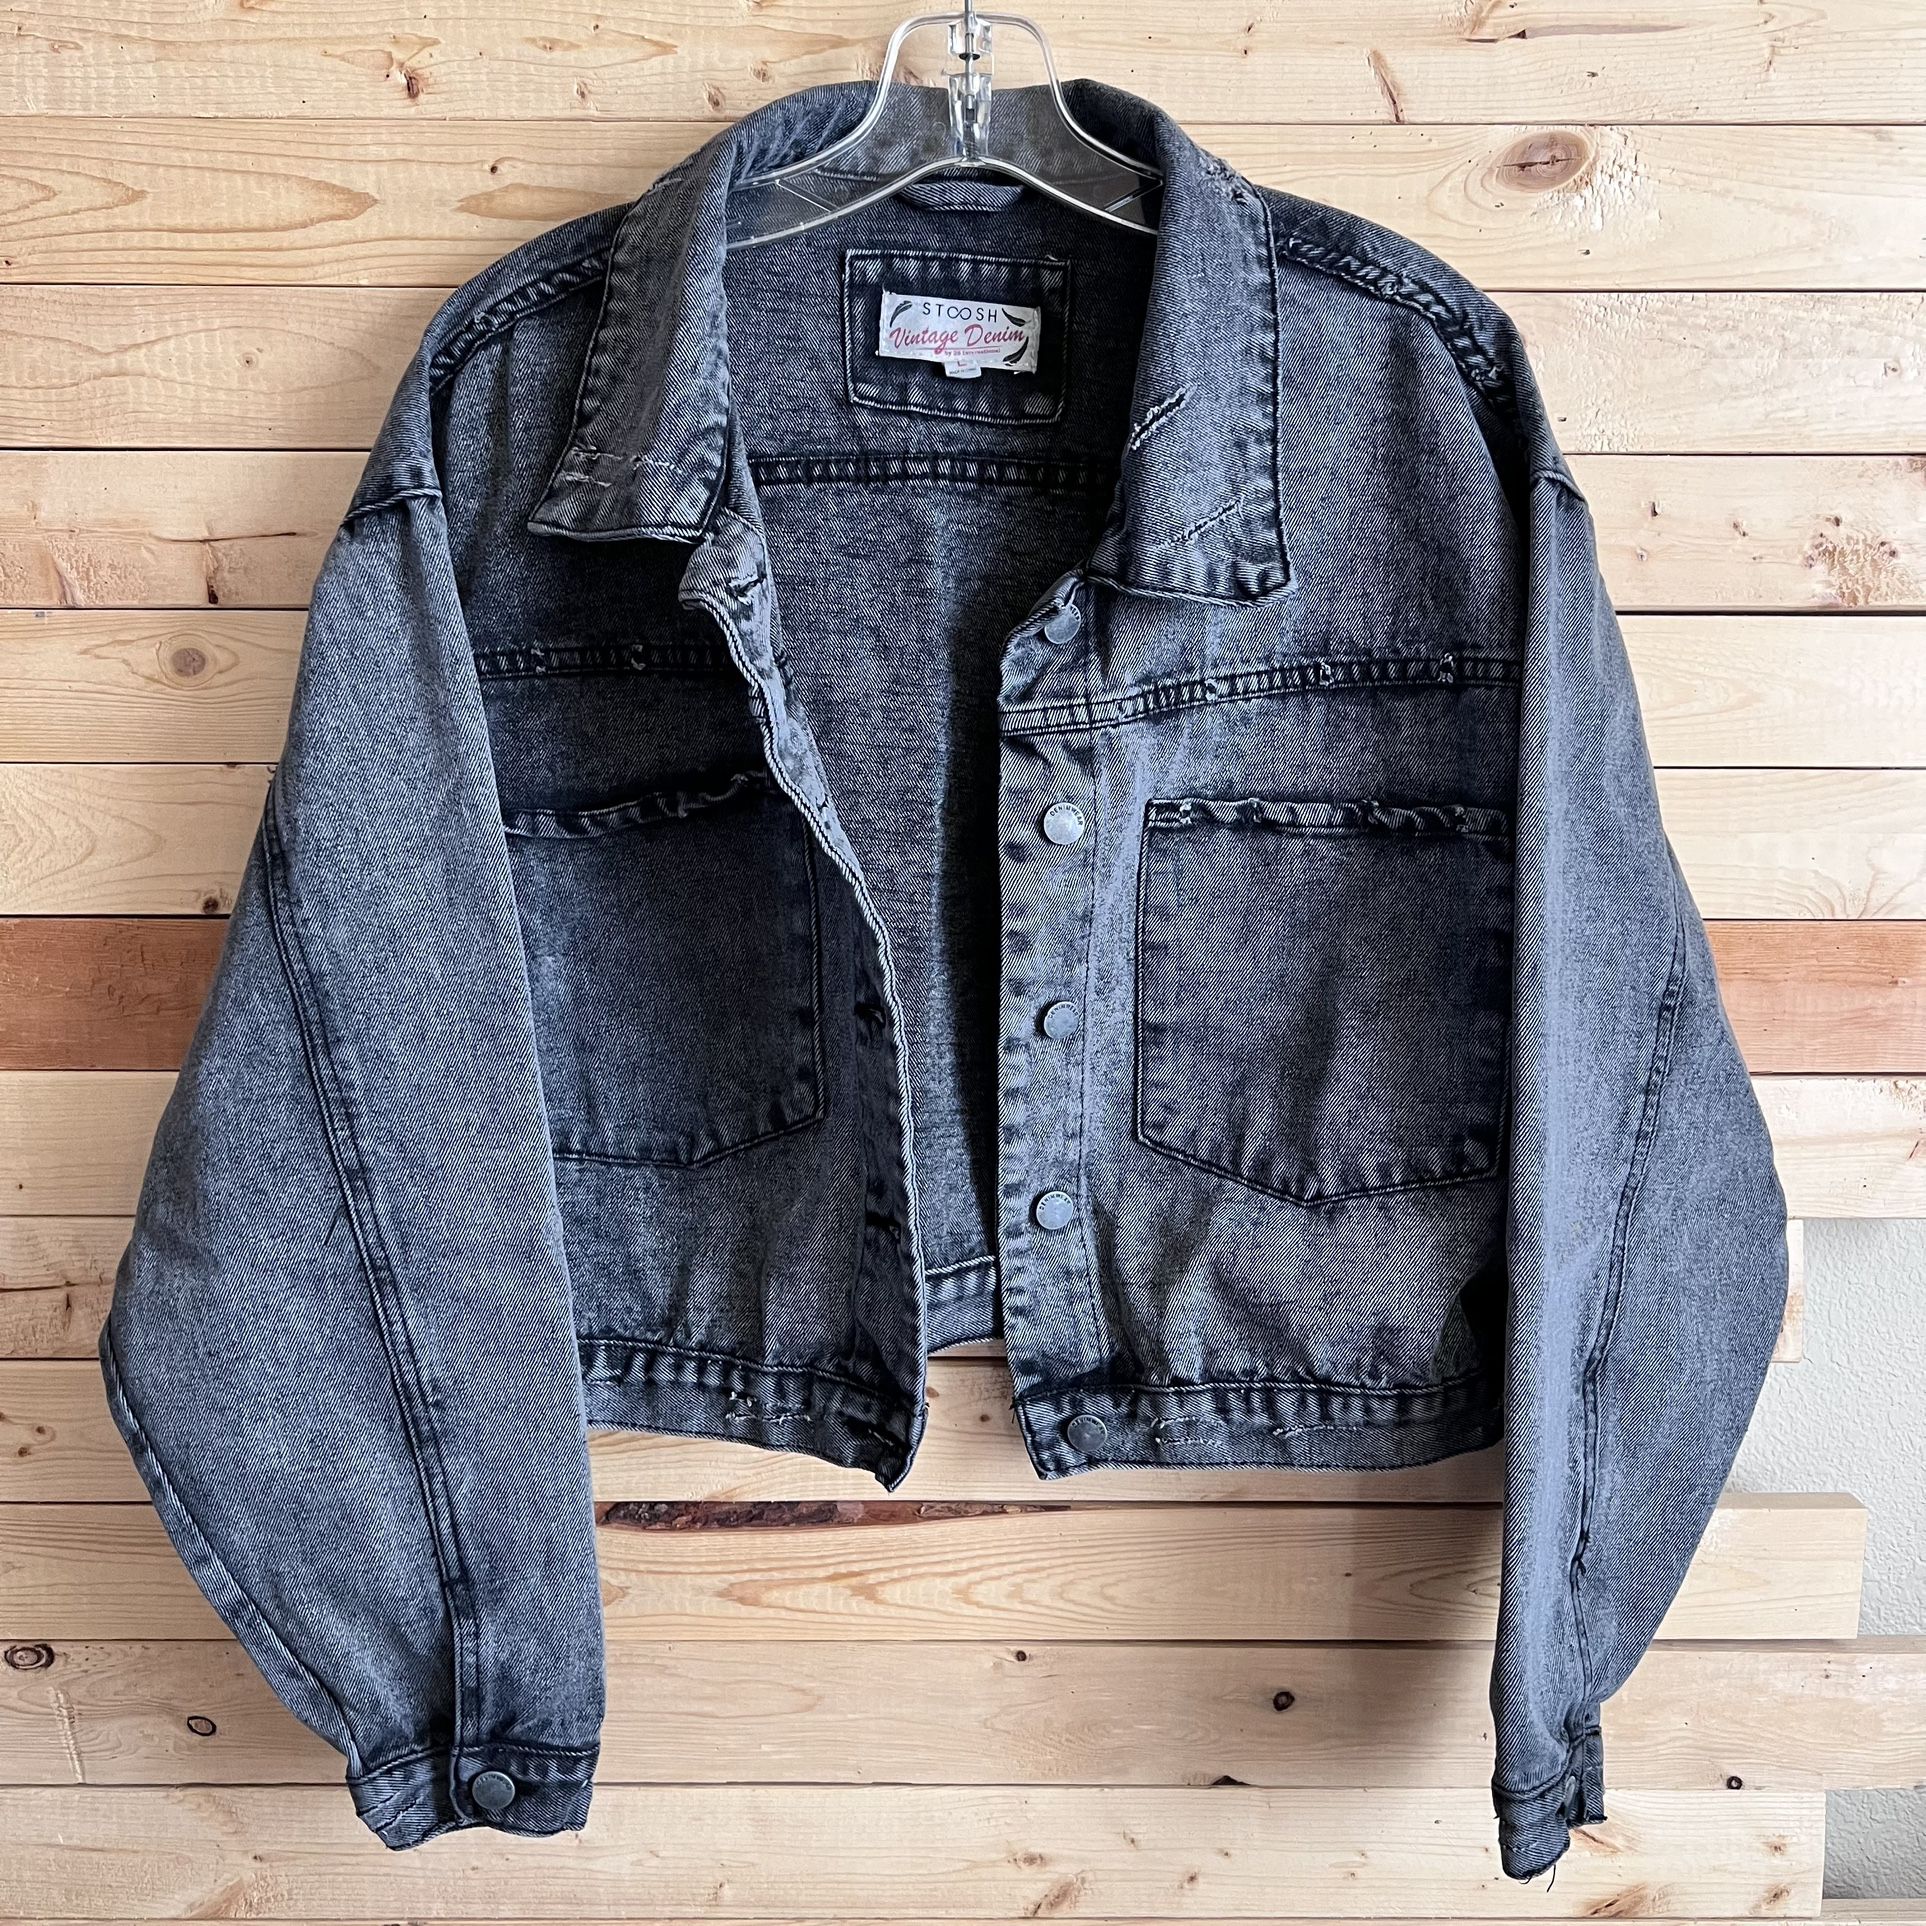 Stoosh Vintage Denim distressed Black Gray Acid Wash Denim Jeans Jacket size L